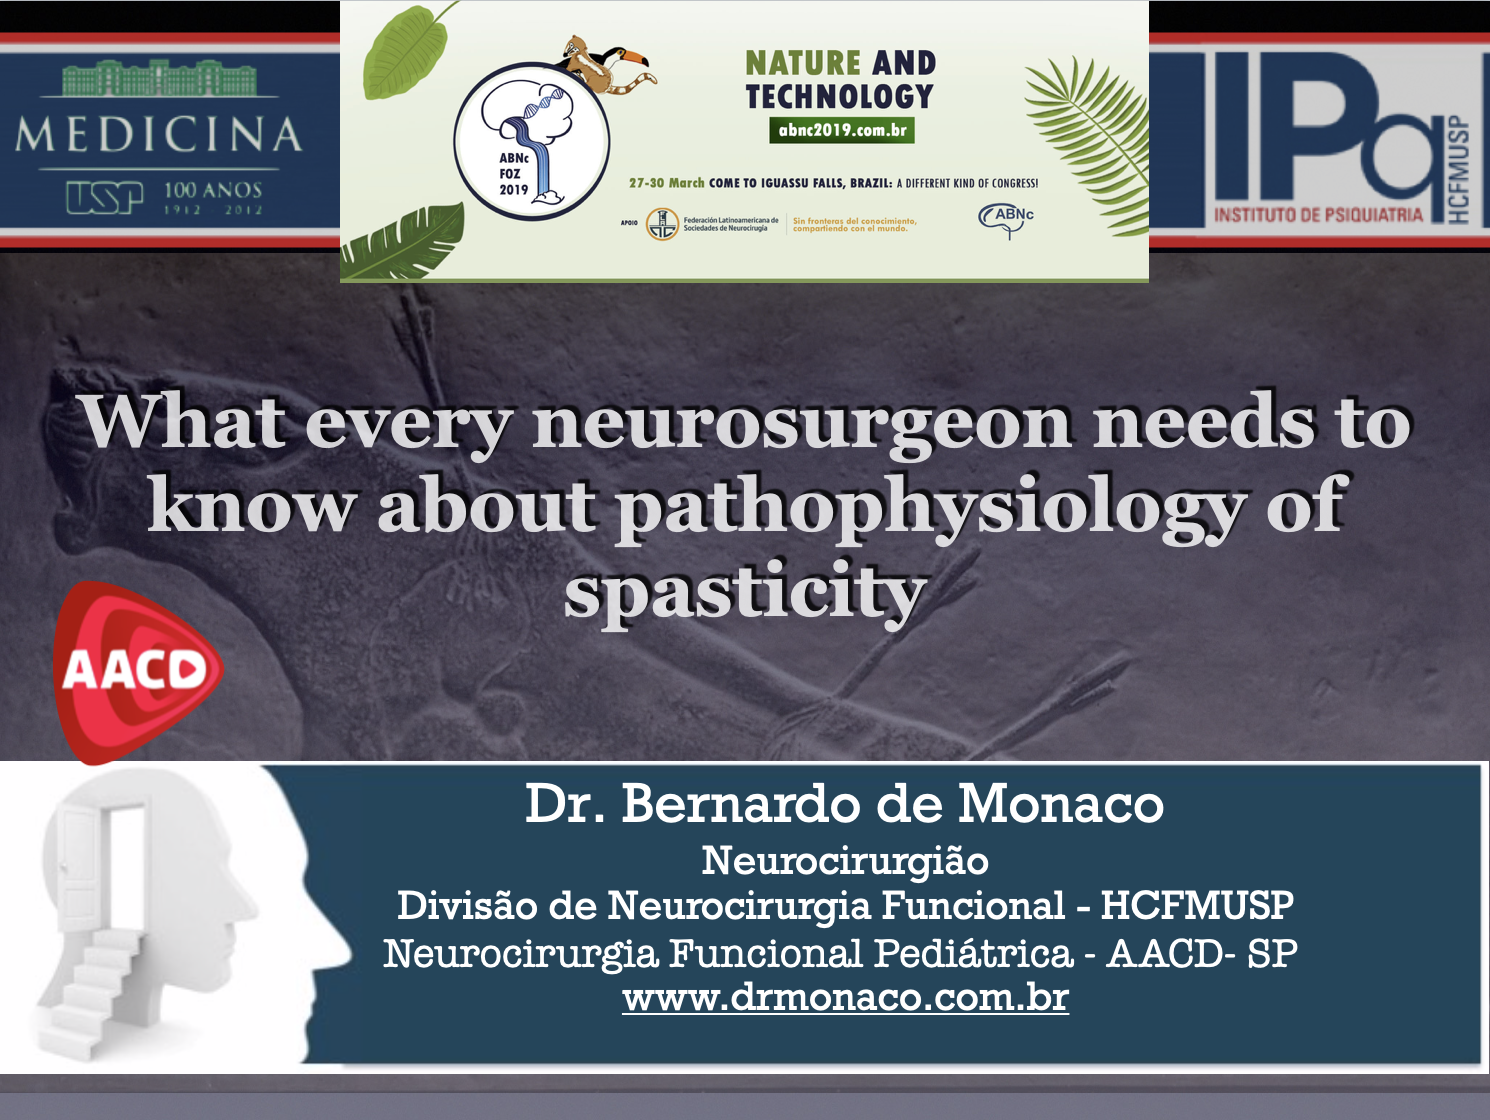 Aula no Congresso da Academia Brasileira de Neurocirurgia em 2019 - Dr. Monaco - Foz do Iguaçu